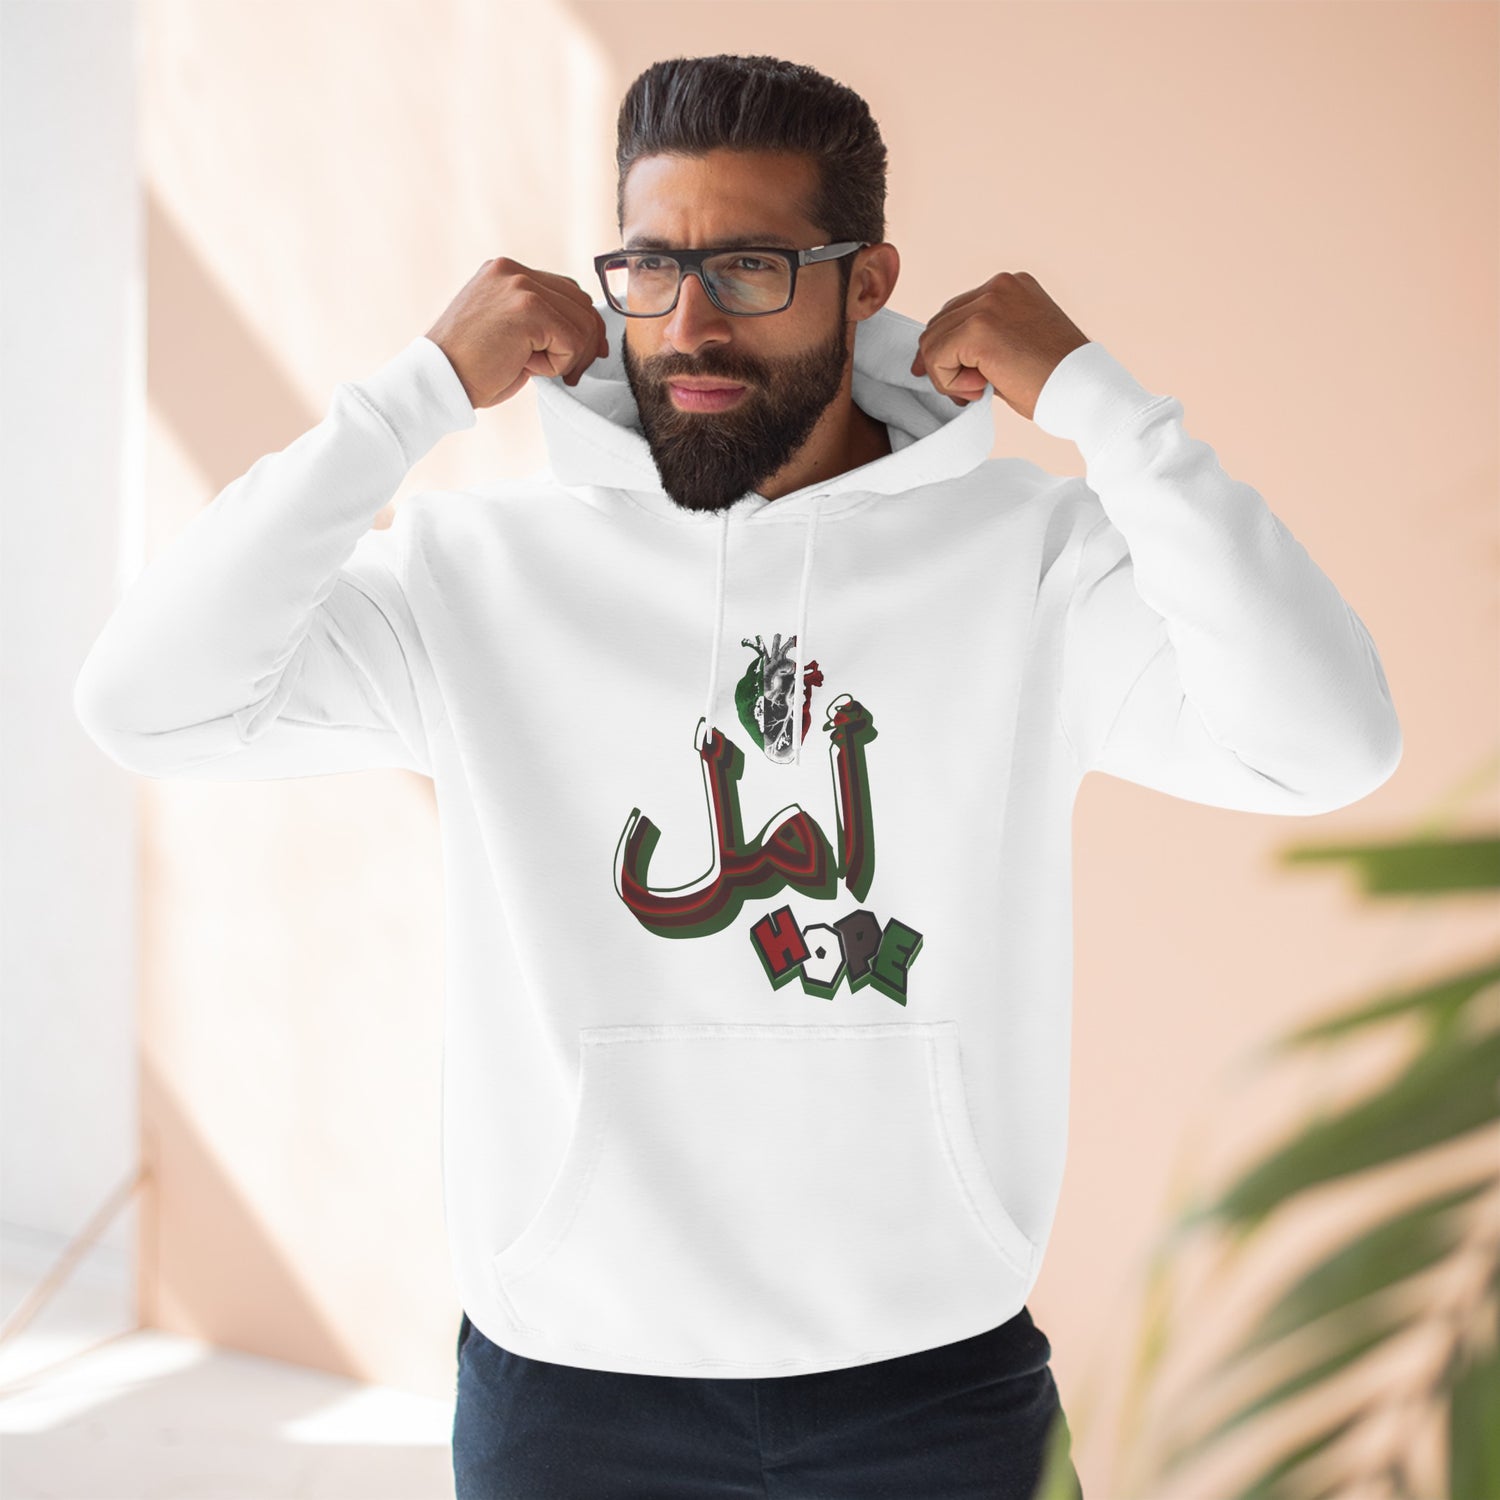 "أمل Amal" (Hope) and "حب Habun" (Love) Sweatshirt